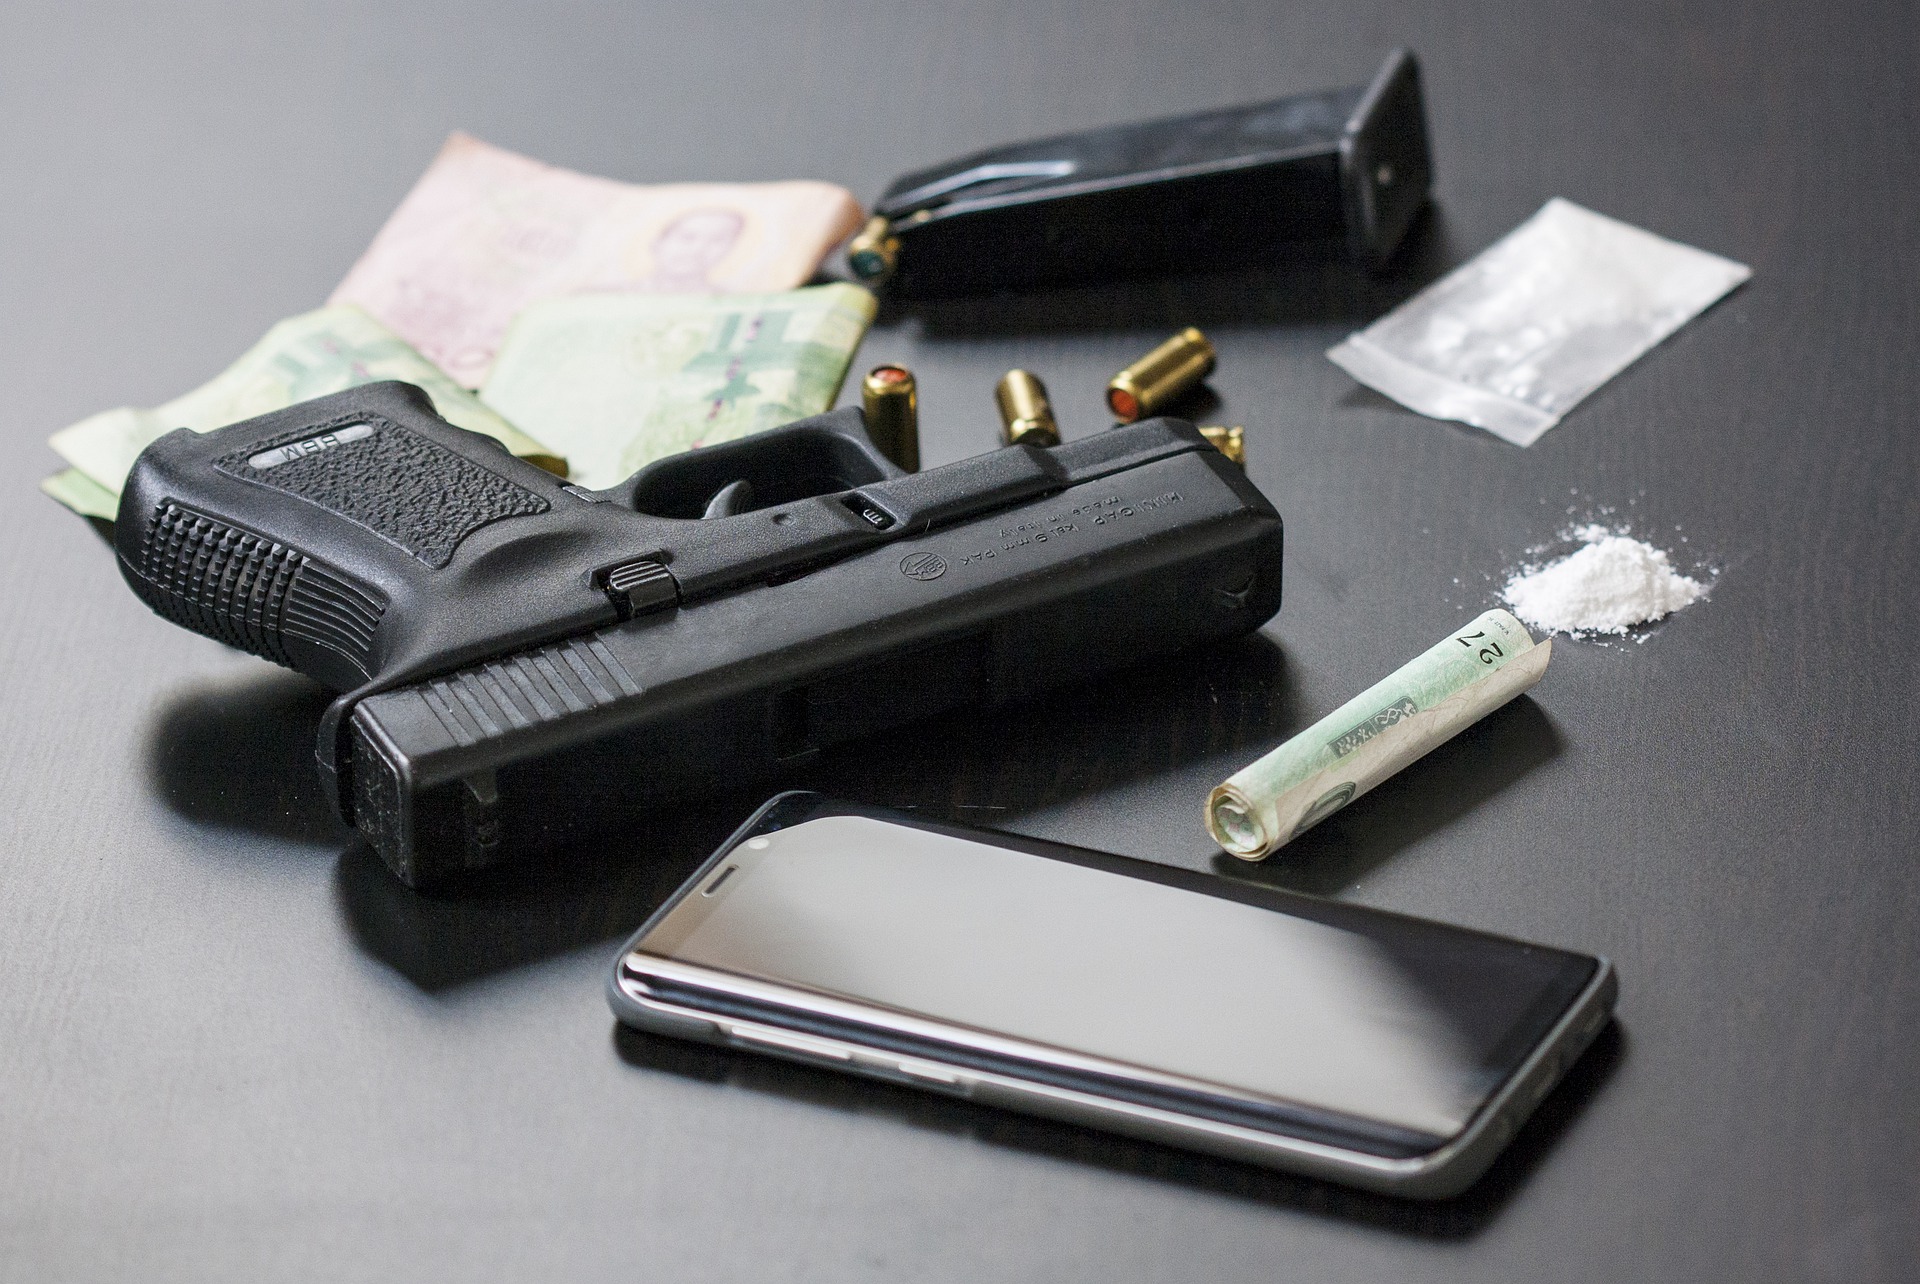 auf einer glatten schwarzen Oberfläche liegen eine Pistole, ein Smartphone und verschiedene Rauschgifte